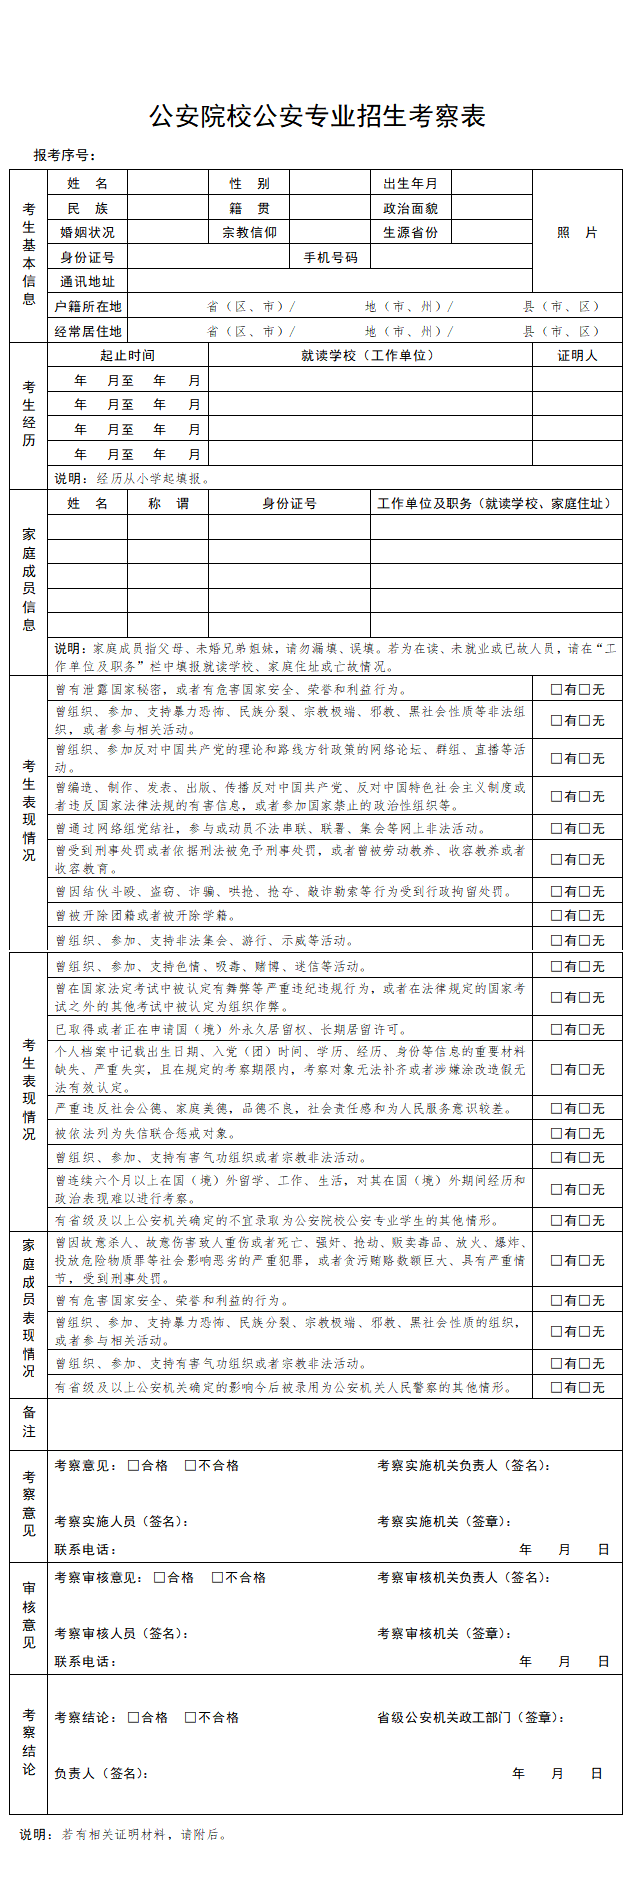 湖南省2020年公安普通高等院校公安专业报考须知